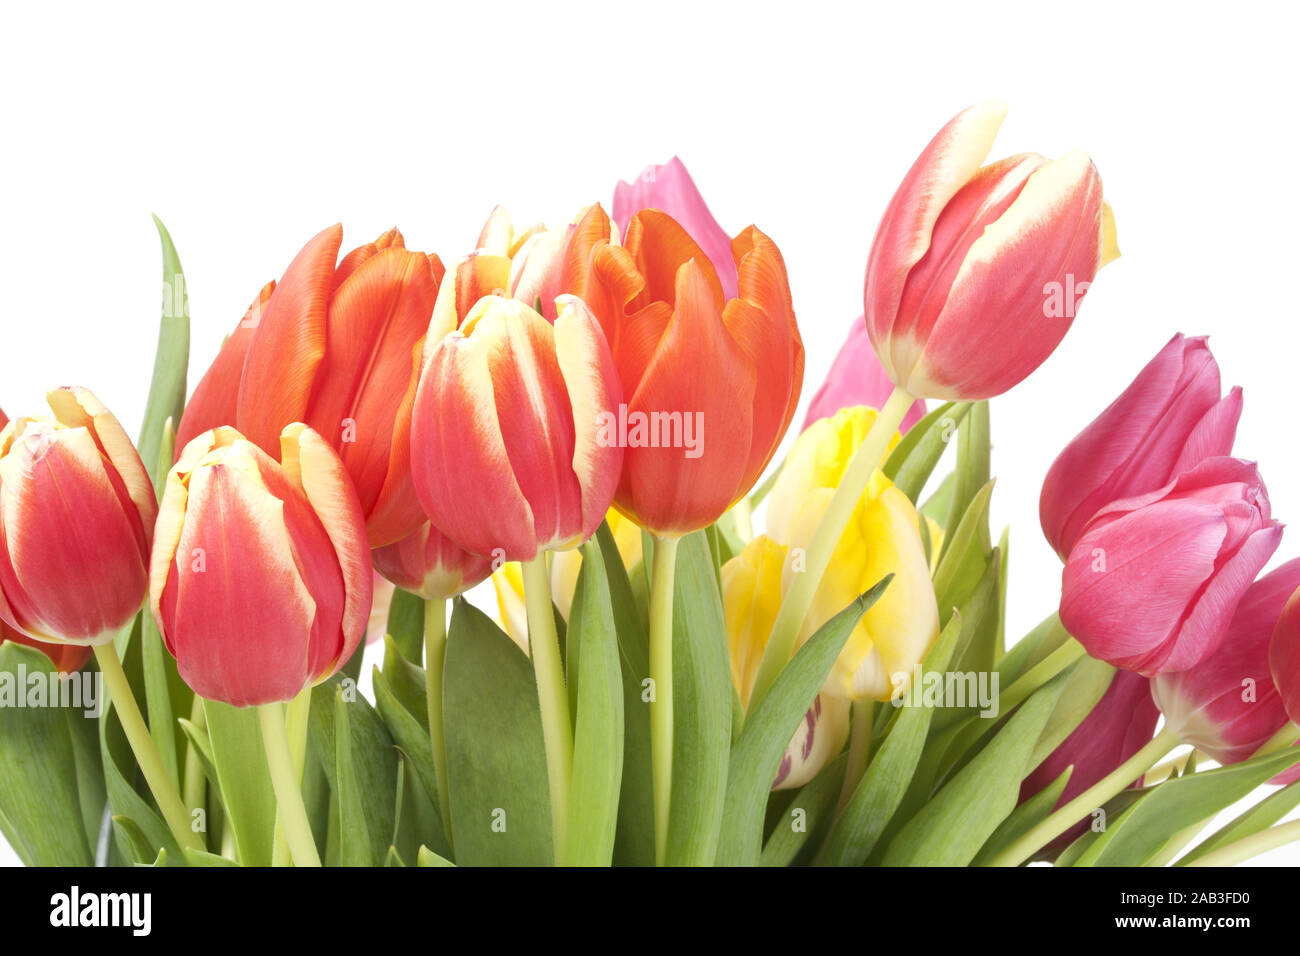 Strauss mit Tulpen |Bouquet of Tulips| Stock Photo